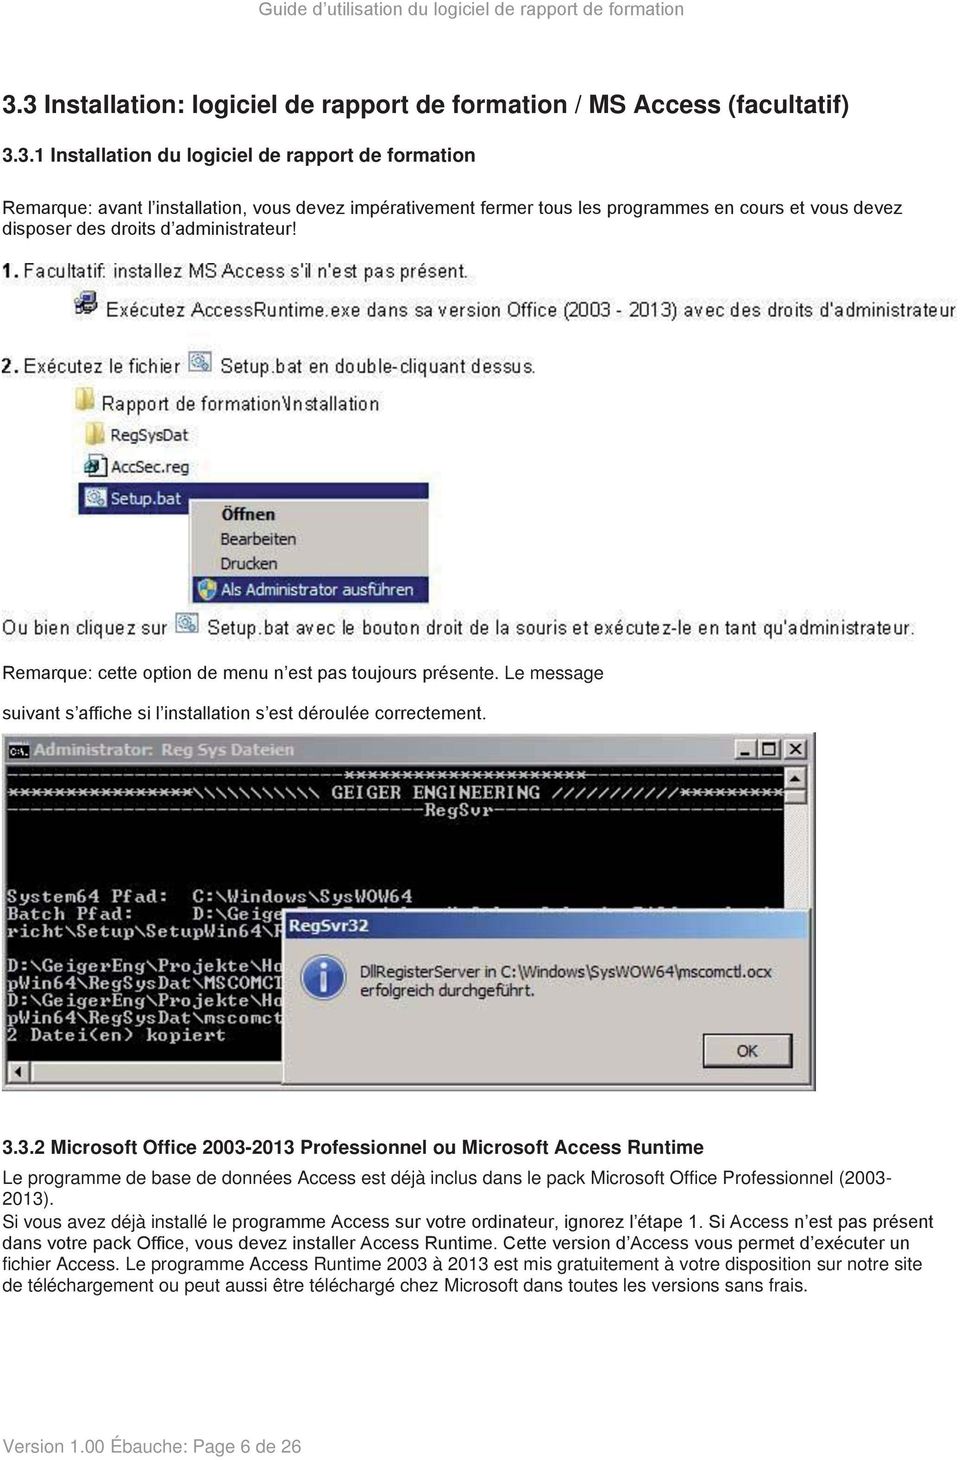 3.2 Microsoft Office 2003-2013 Professionnel ou Microsoft Access Runtime Le programme de base de données Access est déjà inclus dans le pack Microsoft Office Professionnel (2003-2013).